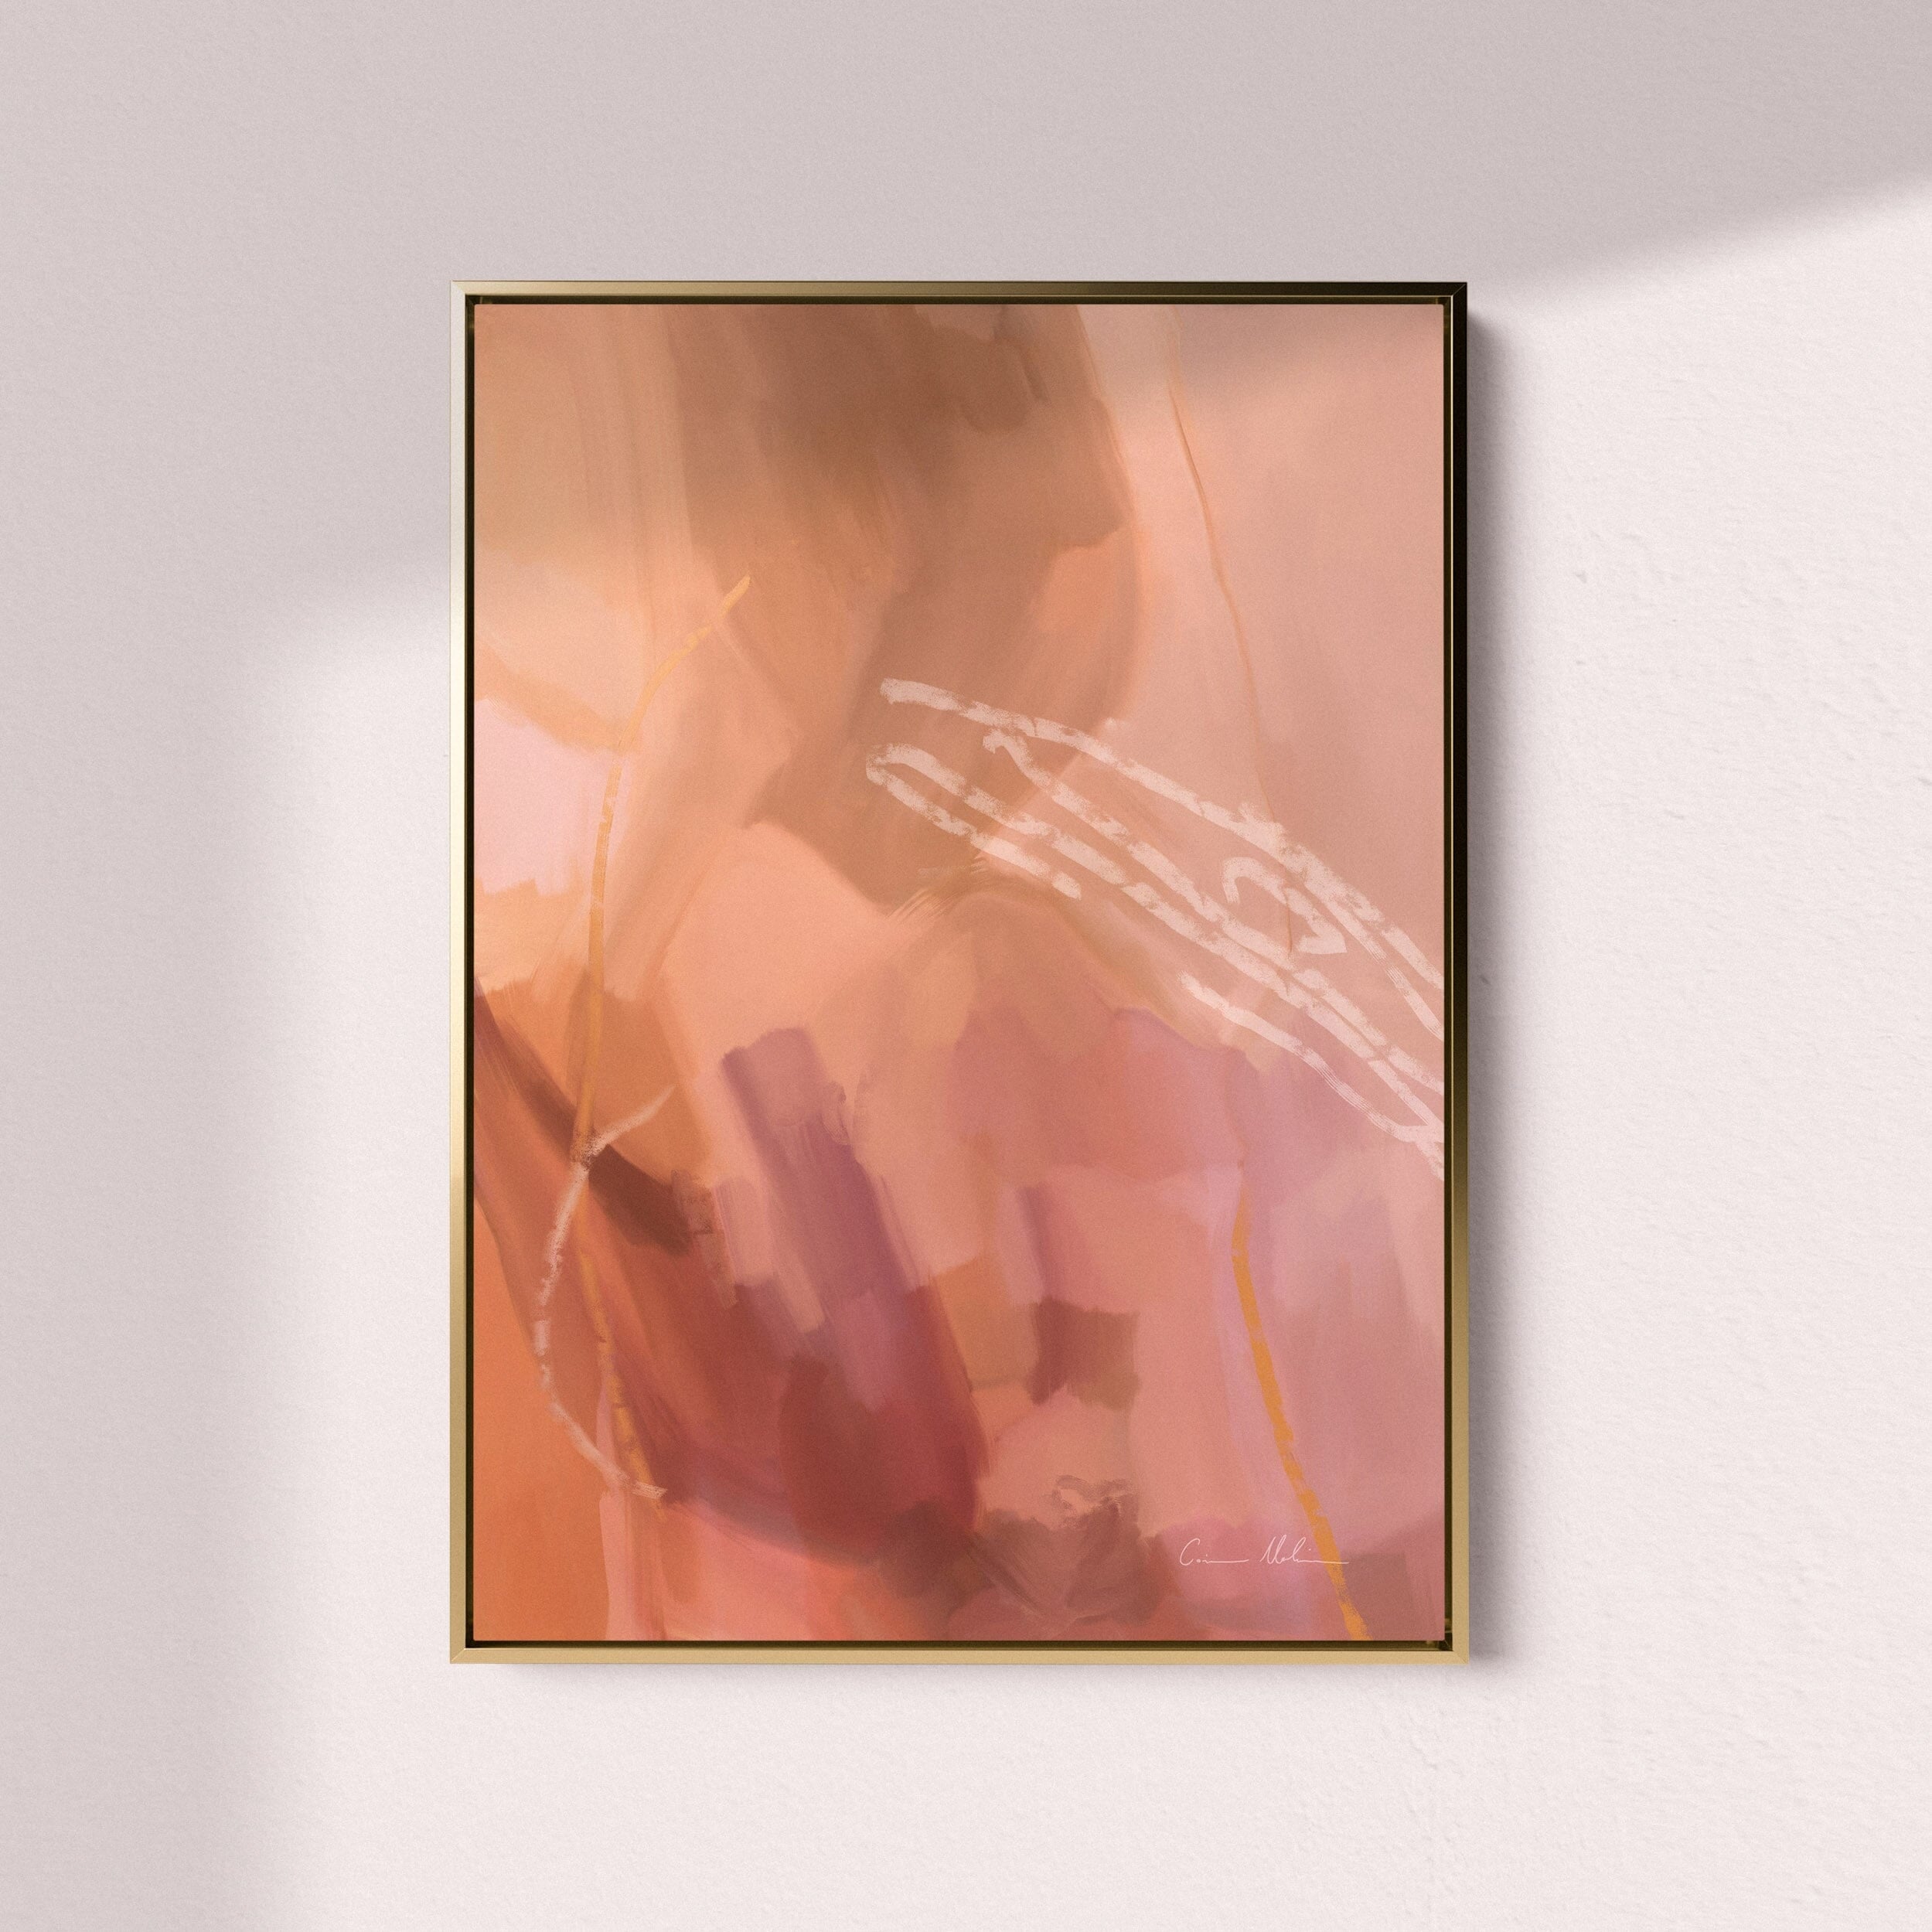 "Gold Coast" on Canvas - Portrait II Canvas Wall Art Corinne Melanie Art Professionally Framed - Gold 24x32in / 60x80cm 